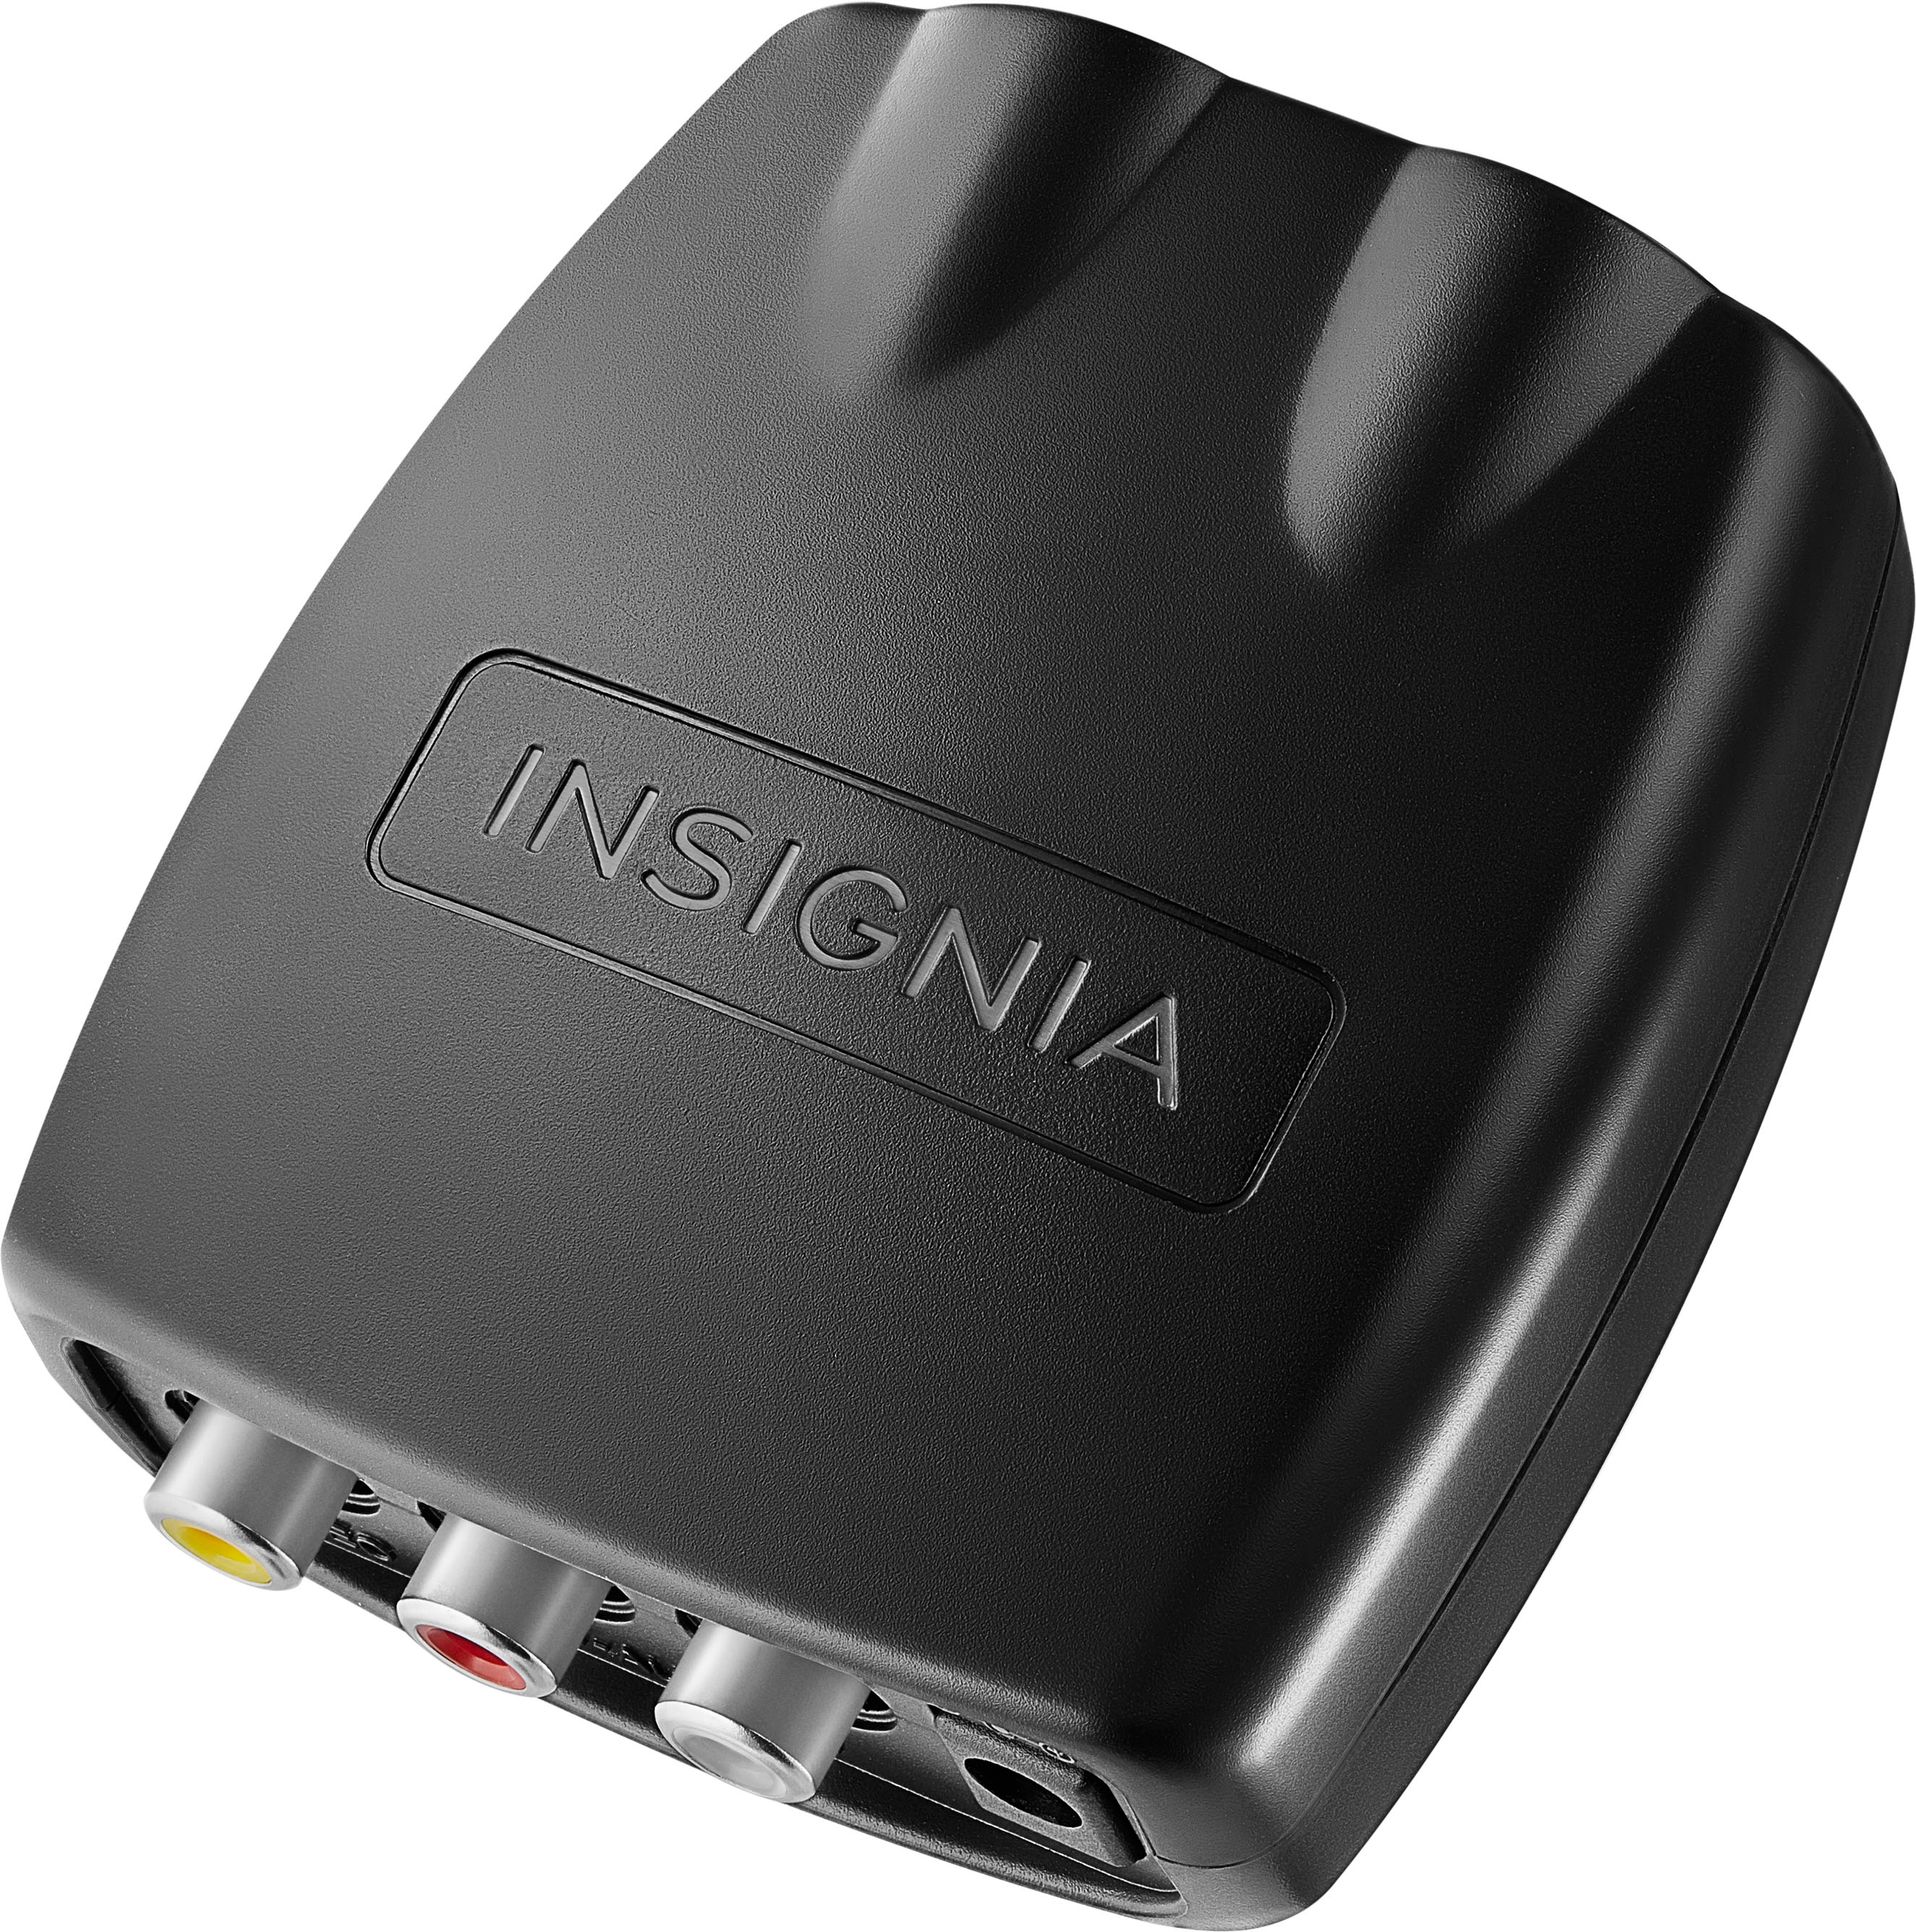 Insignia- HDMI to RCA Converter - Black | eBay